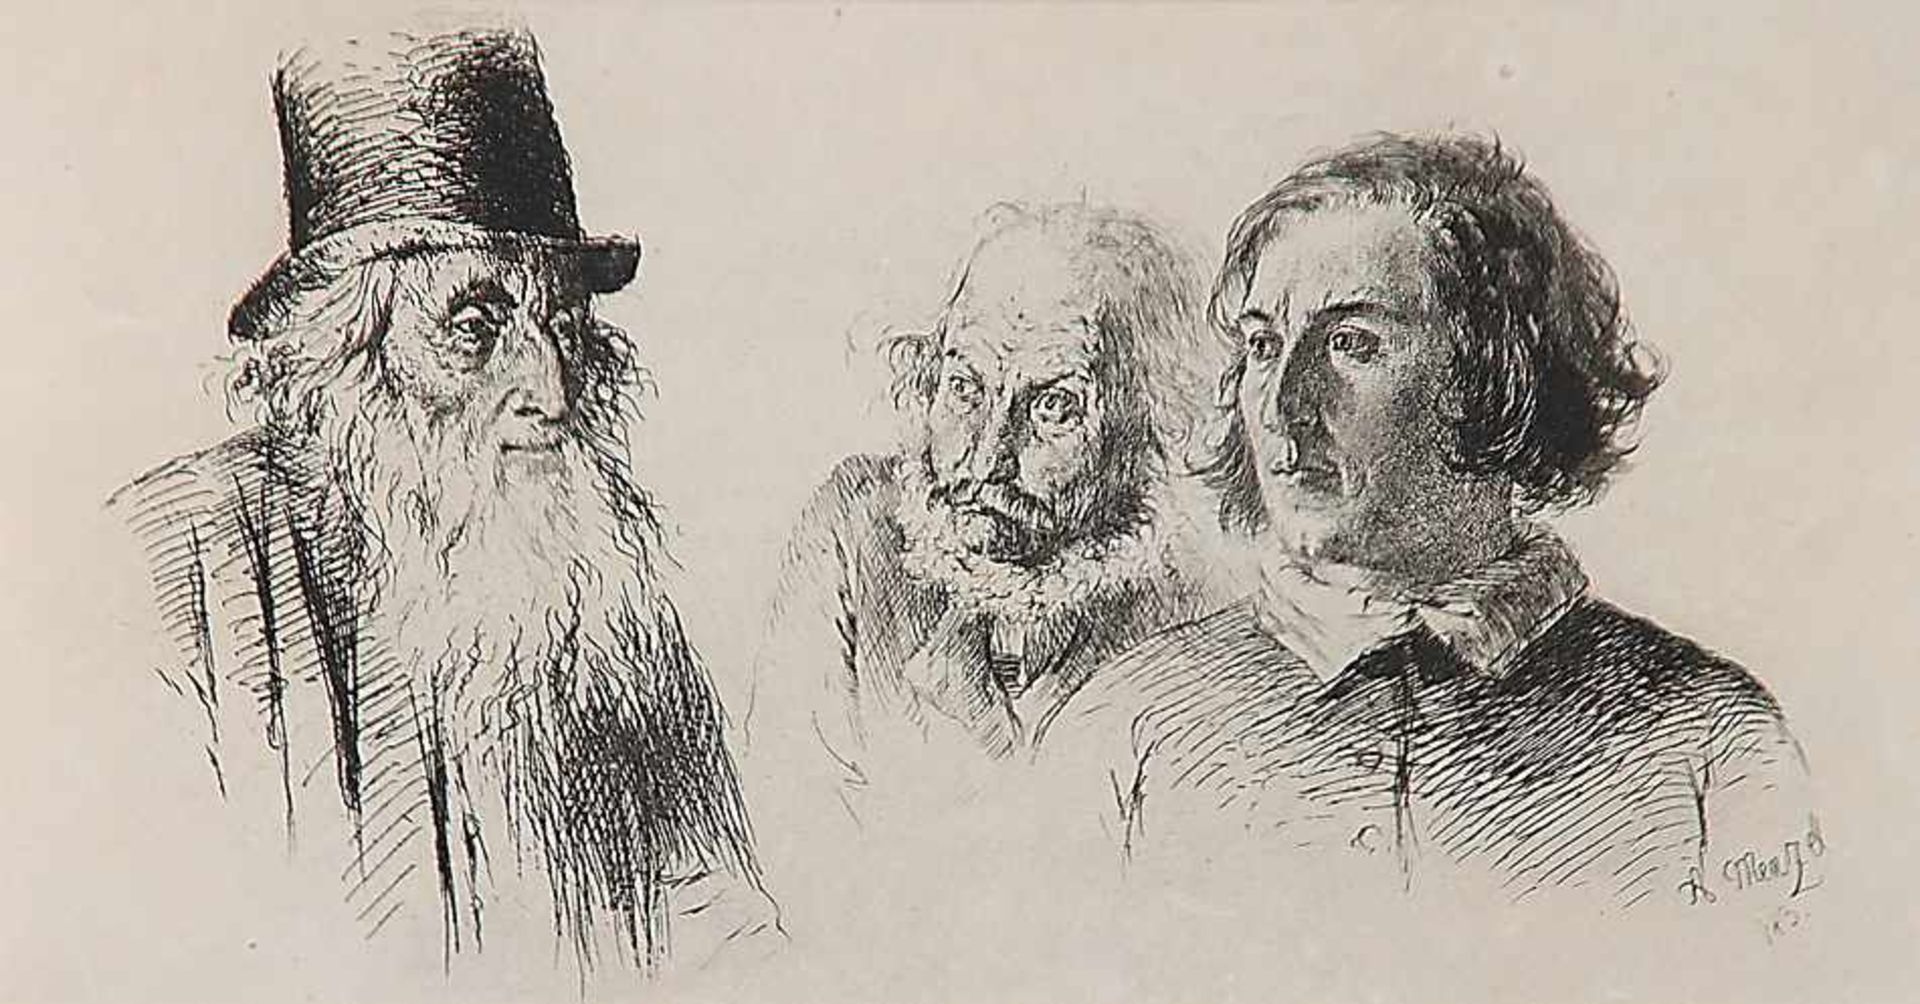 Menzel, Adolph von1815 Breslau - 1905 Berlin; deut. Maler, Zeichner und Illustrator.